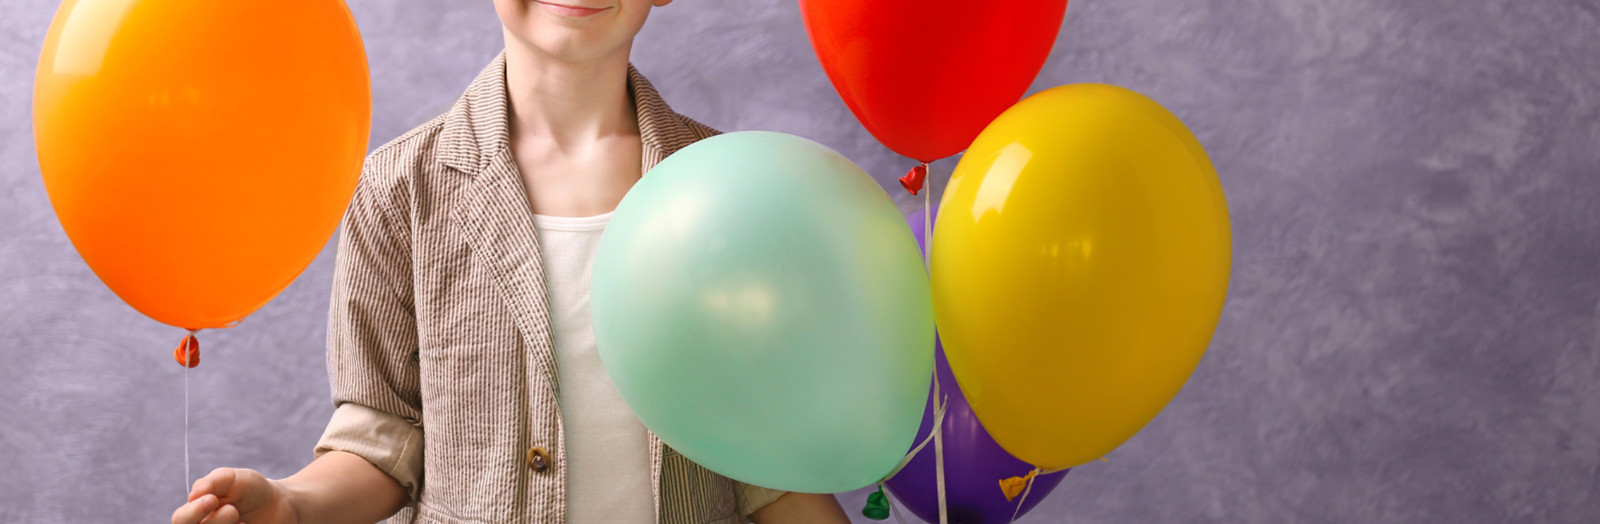 Ballons anniversaire garçon - Décoration de fête pour enfant